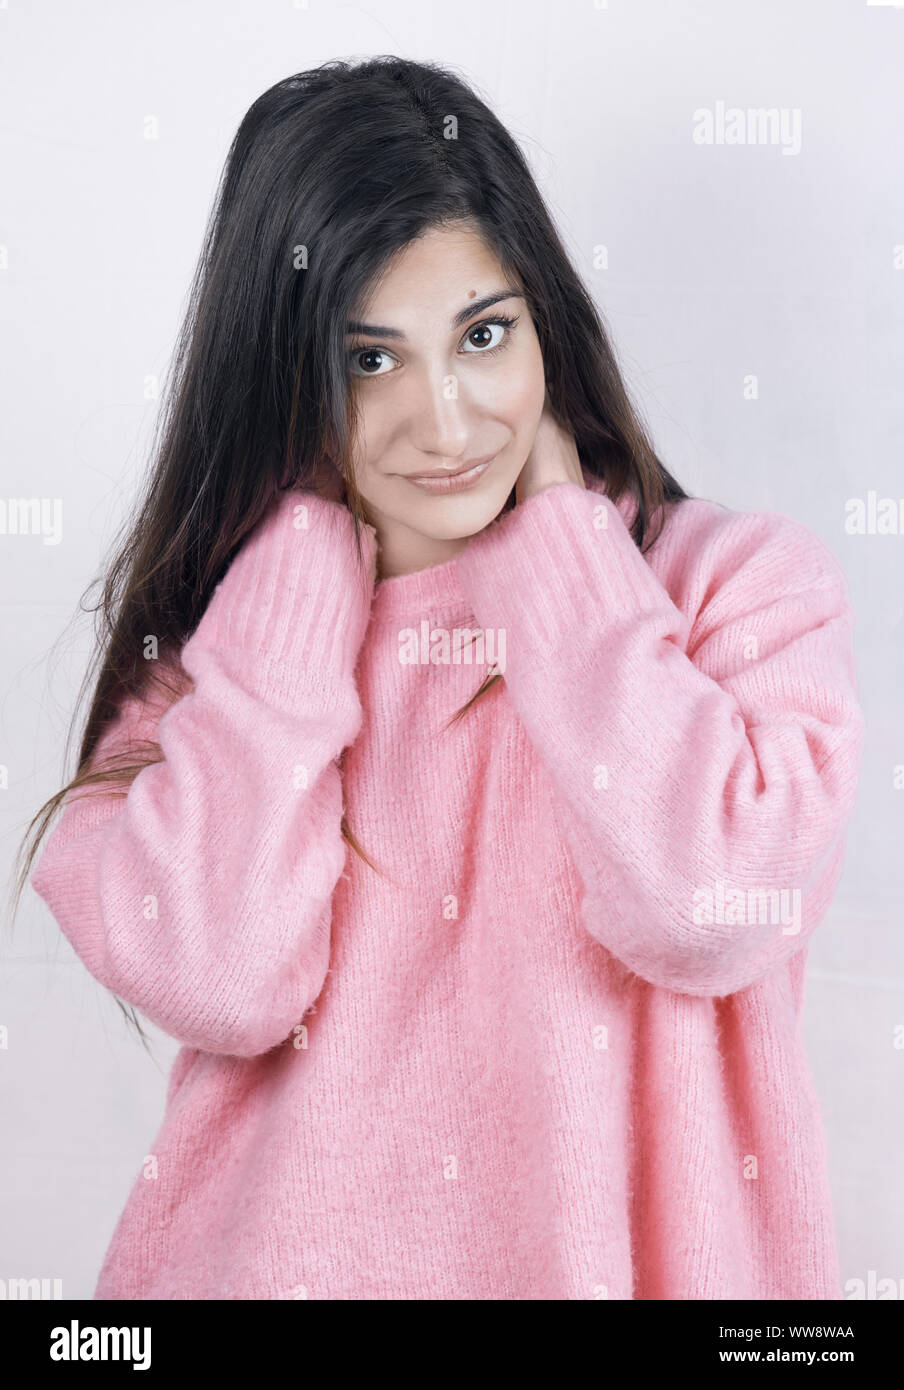 Hübsches Mädchen mit glattem Haar und einem warmen rosa Pullover Stockfoto